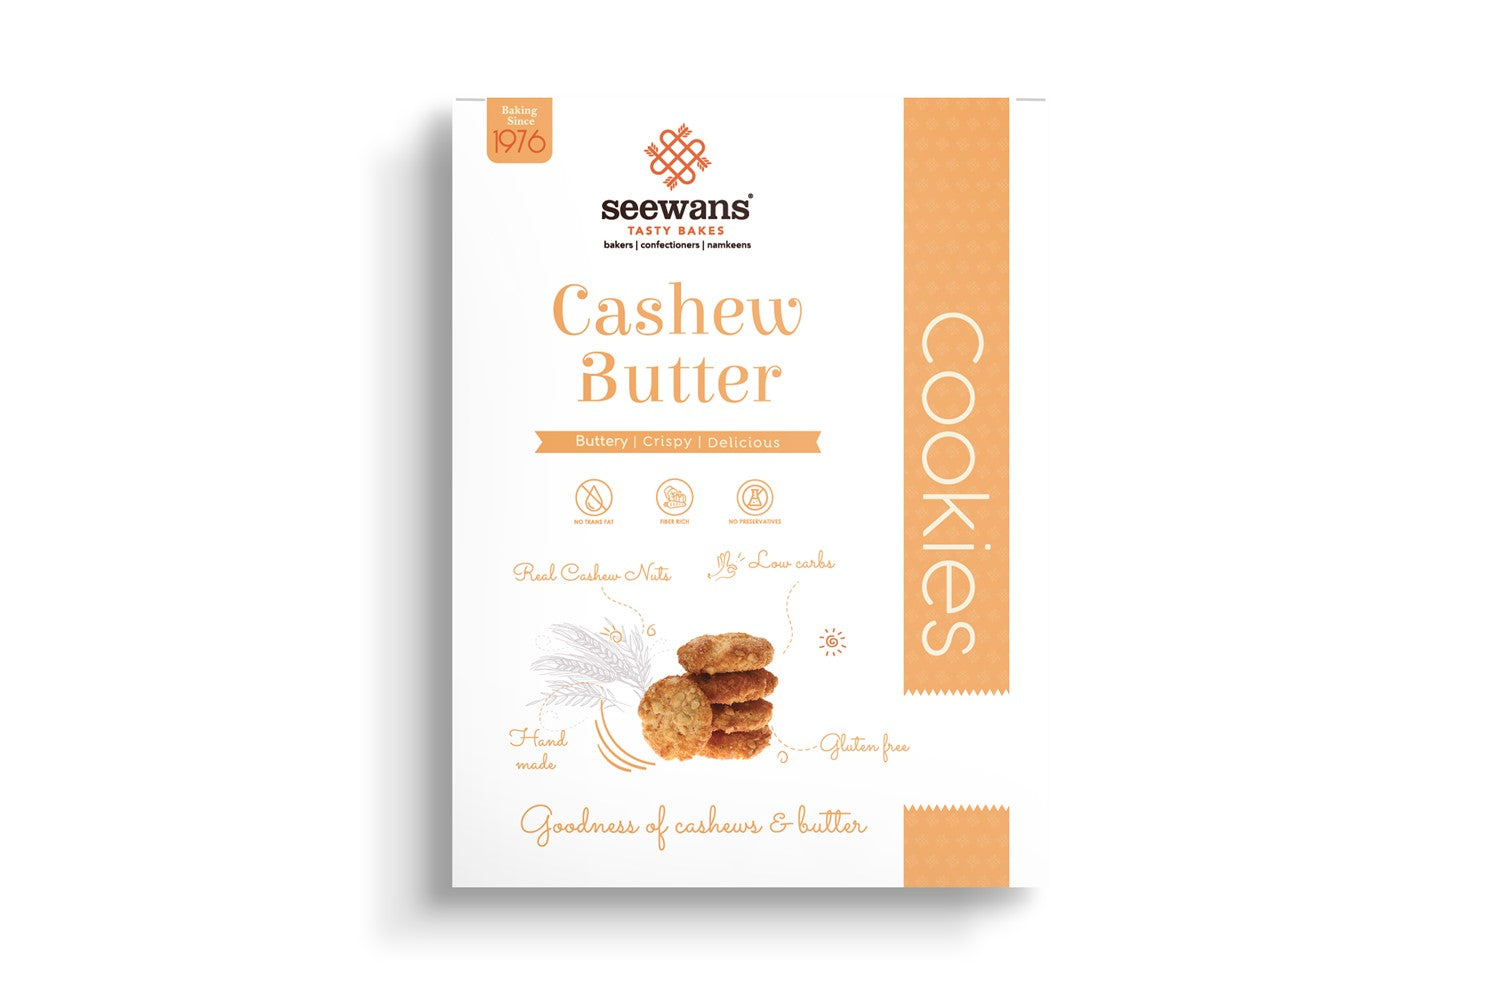 Cashew Butter Cookies